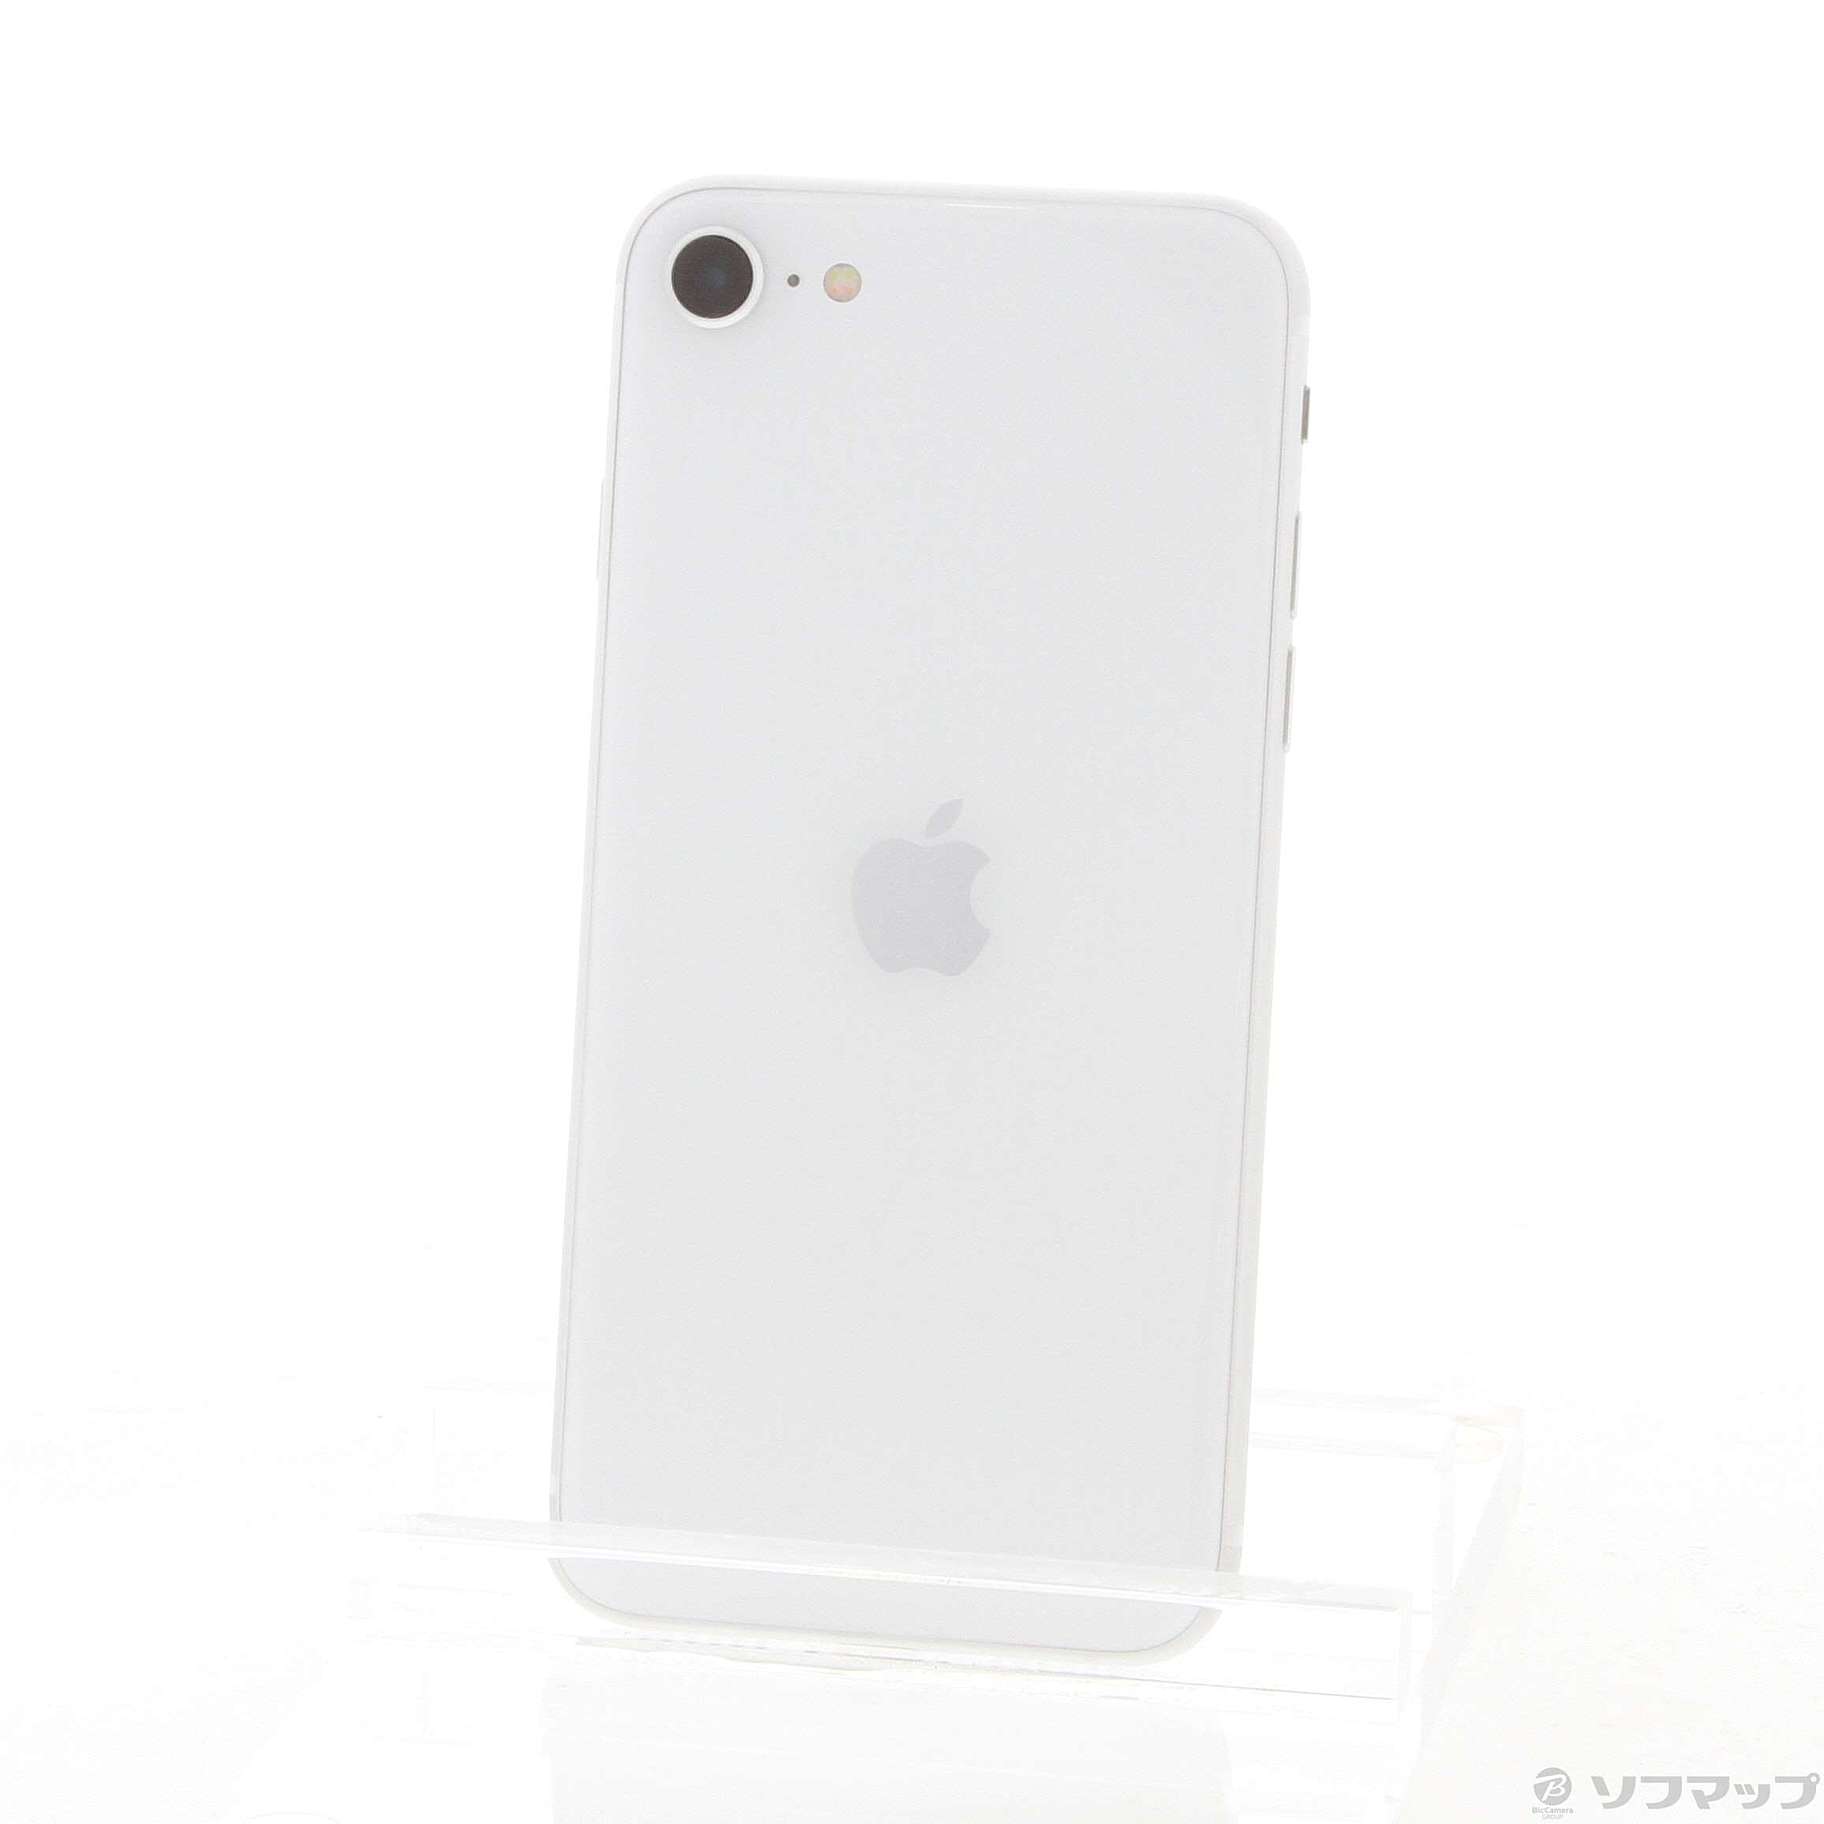 アップル iPhoneSE 第2世代 64GB ホワイト softbank